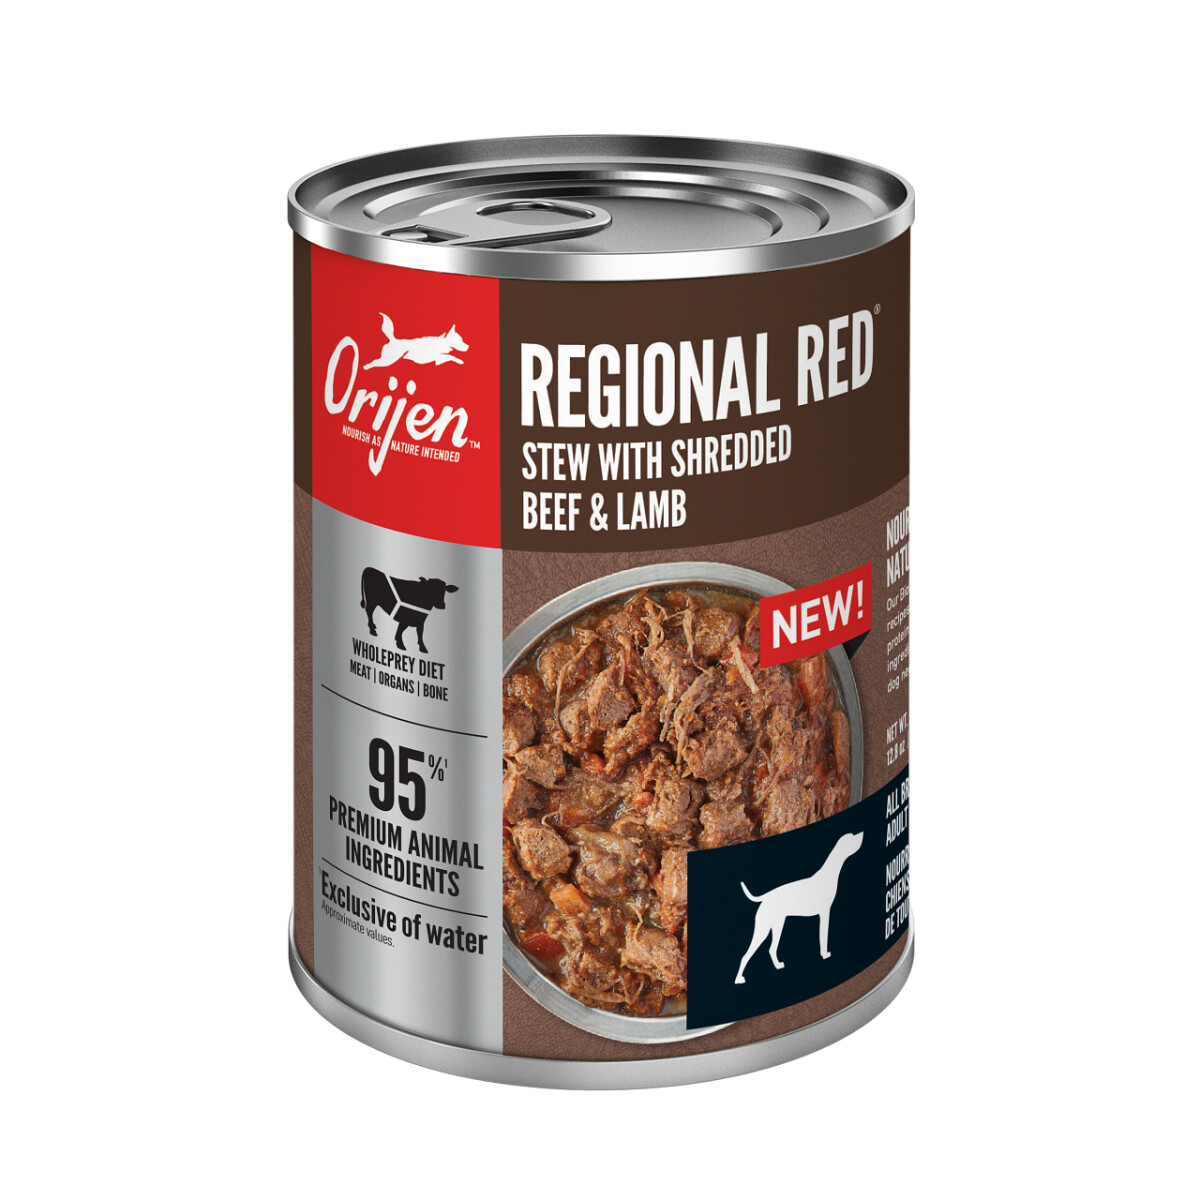 Oj704 - Nourriture en boîte ragoût régional rouge pour chiens - ORIJEN